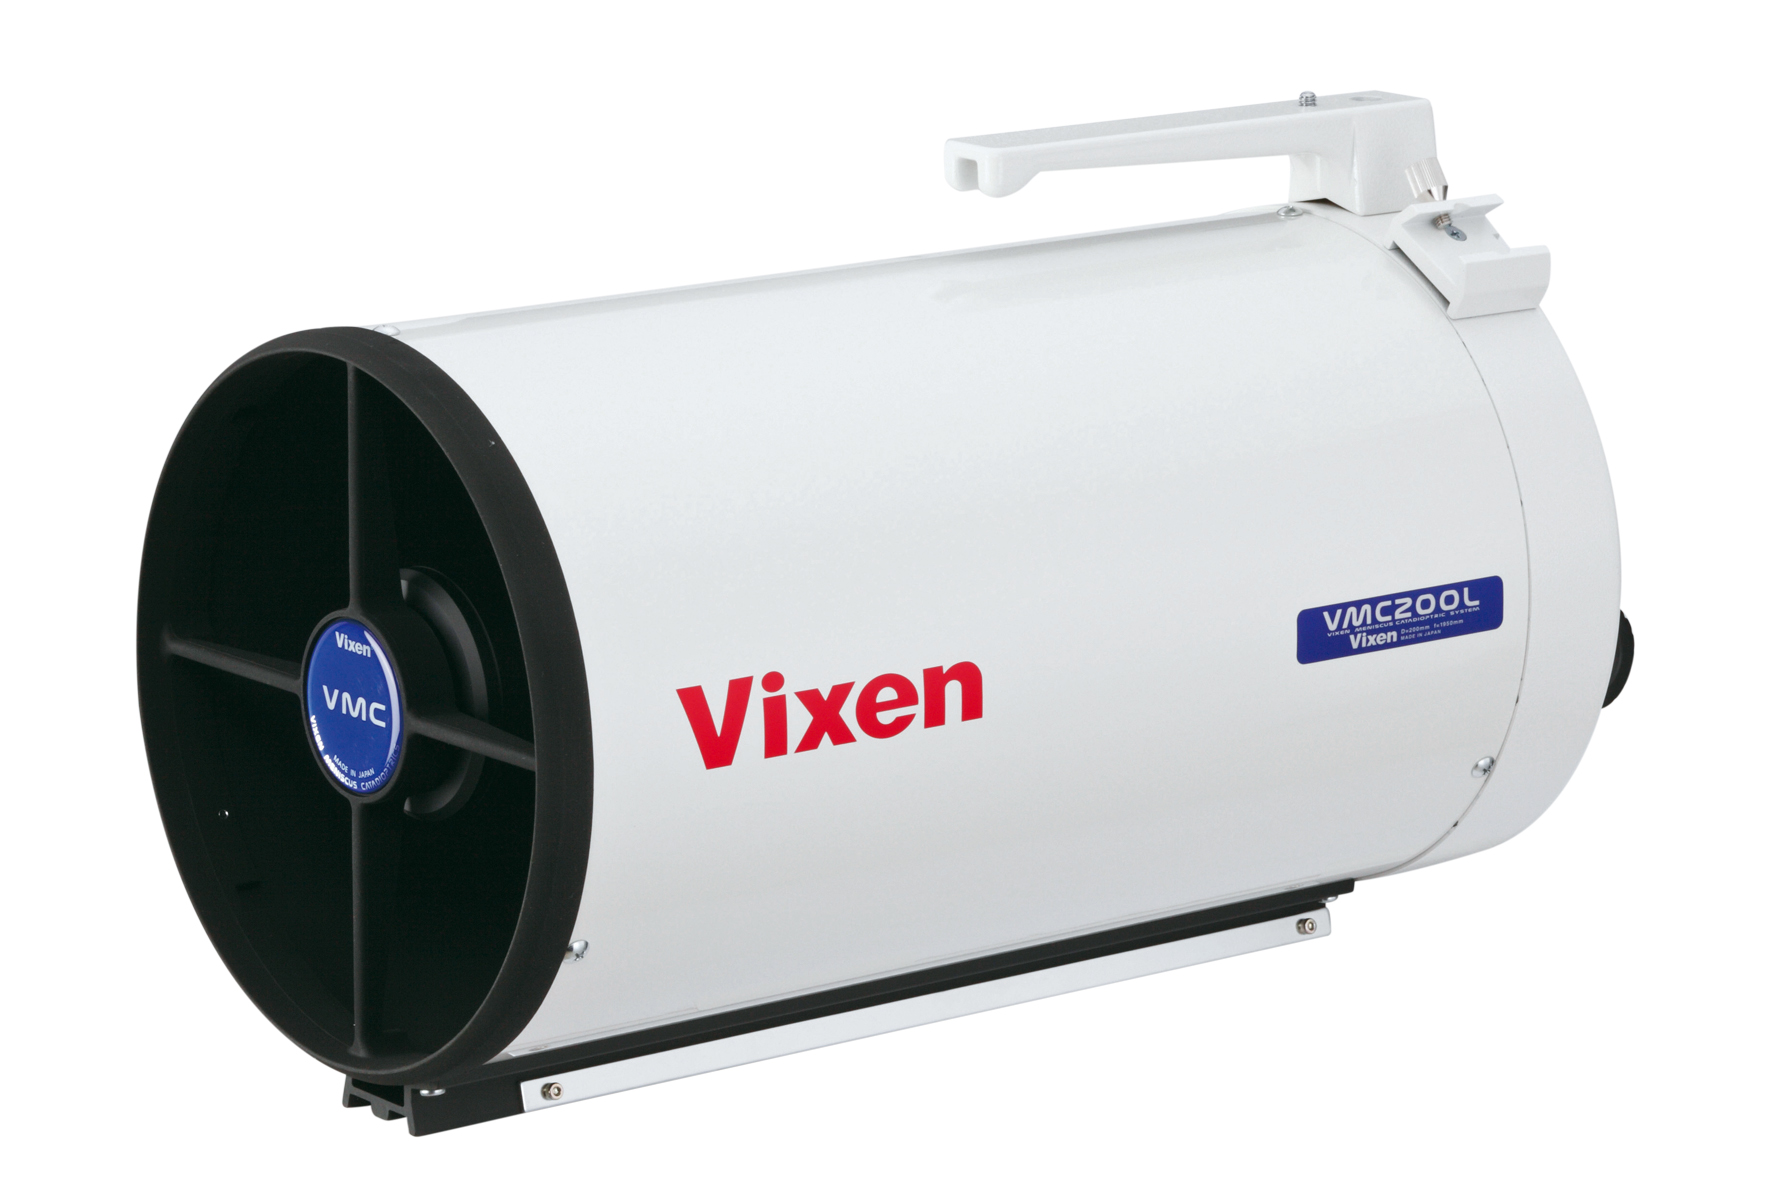 Vixen VMC200L Maksutov-Cassegrain Spiegelteleskop - optischer Tubus